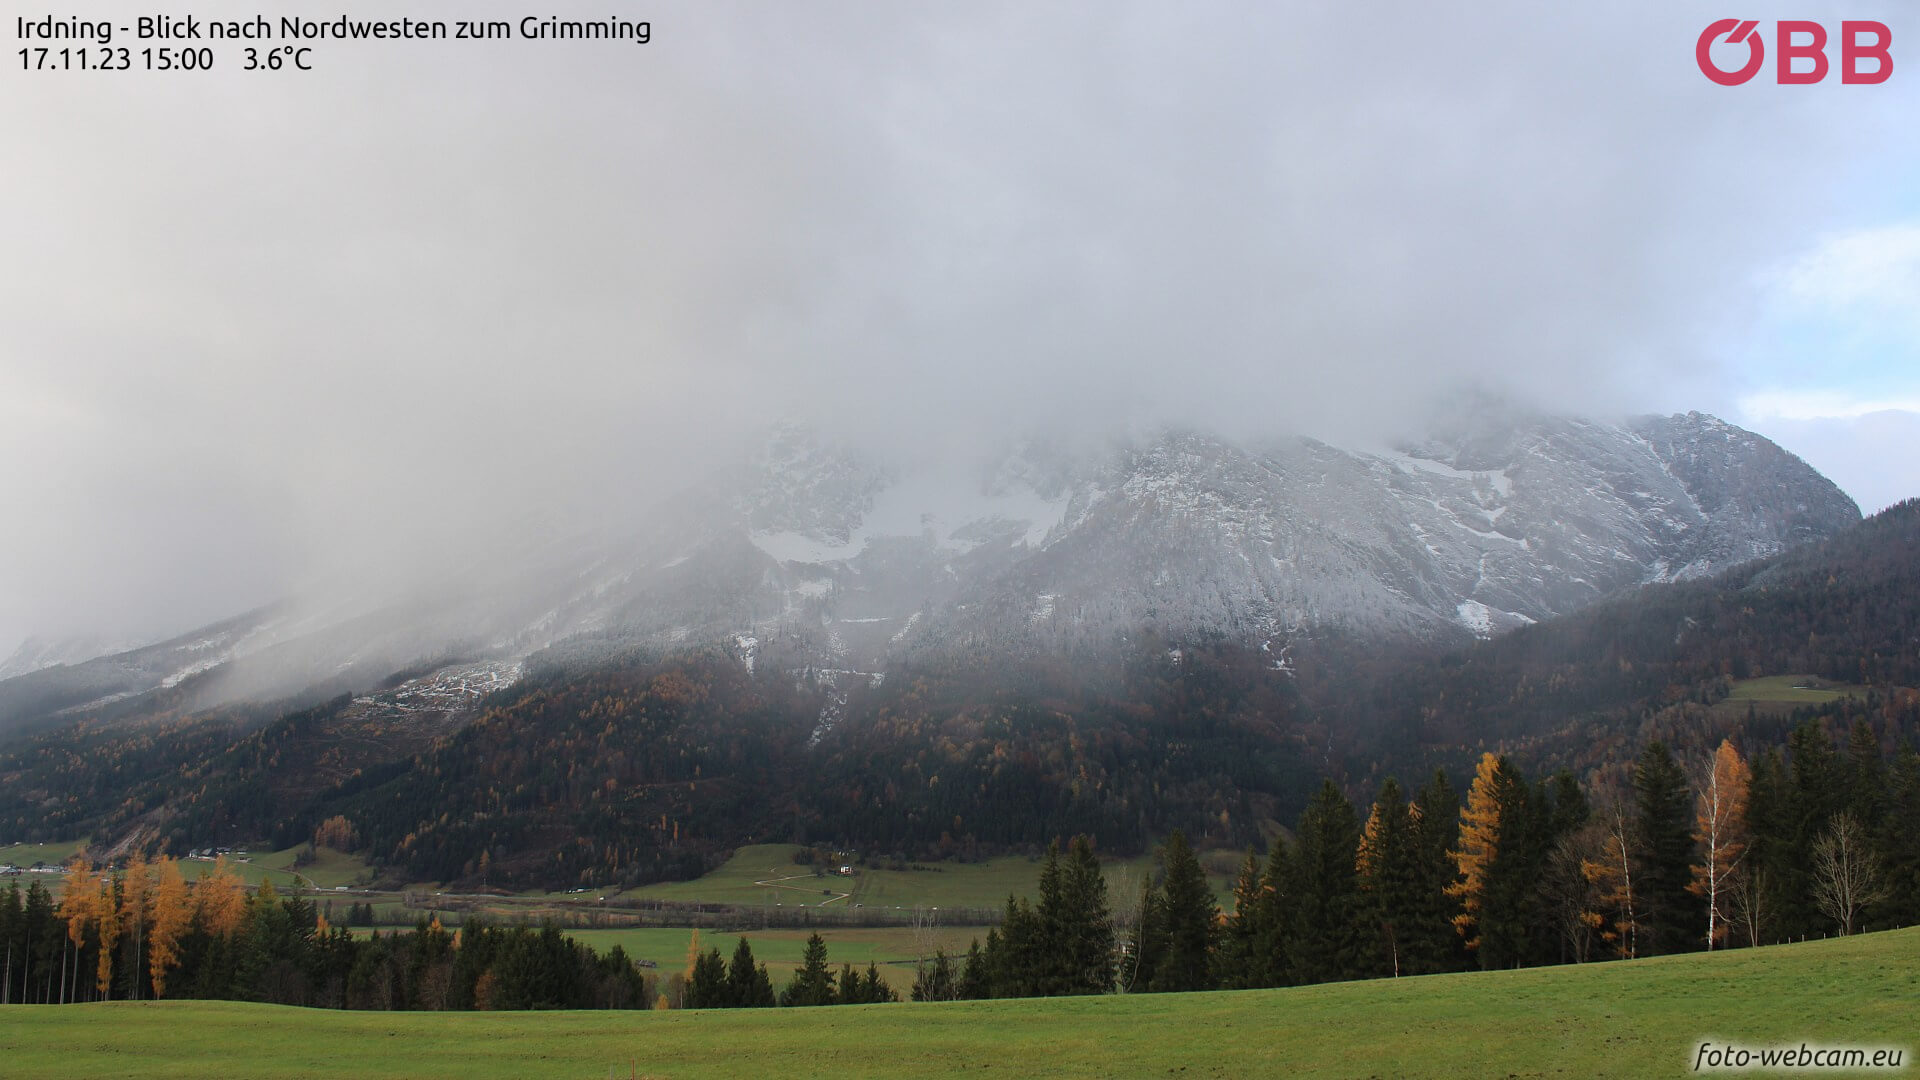 Regen, Schnee und Sonne beim Grimming - foto-webcam.eu